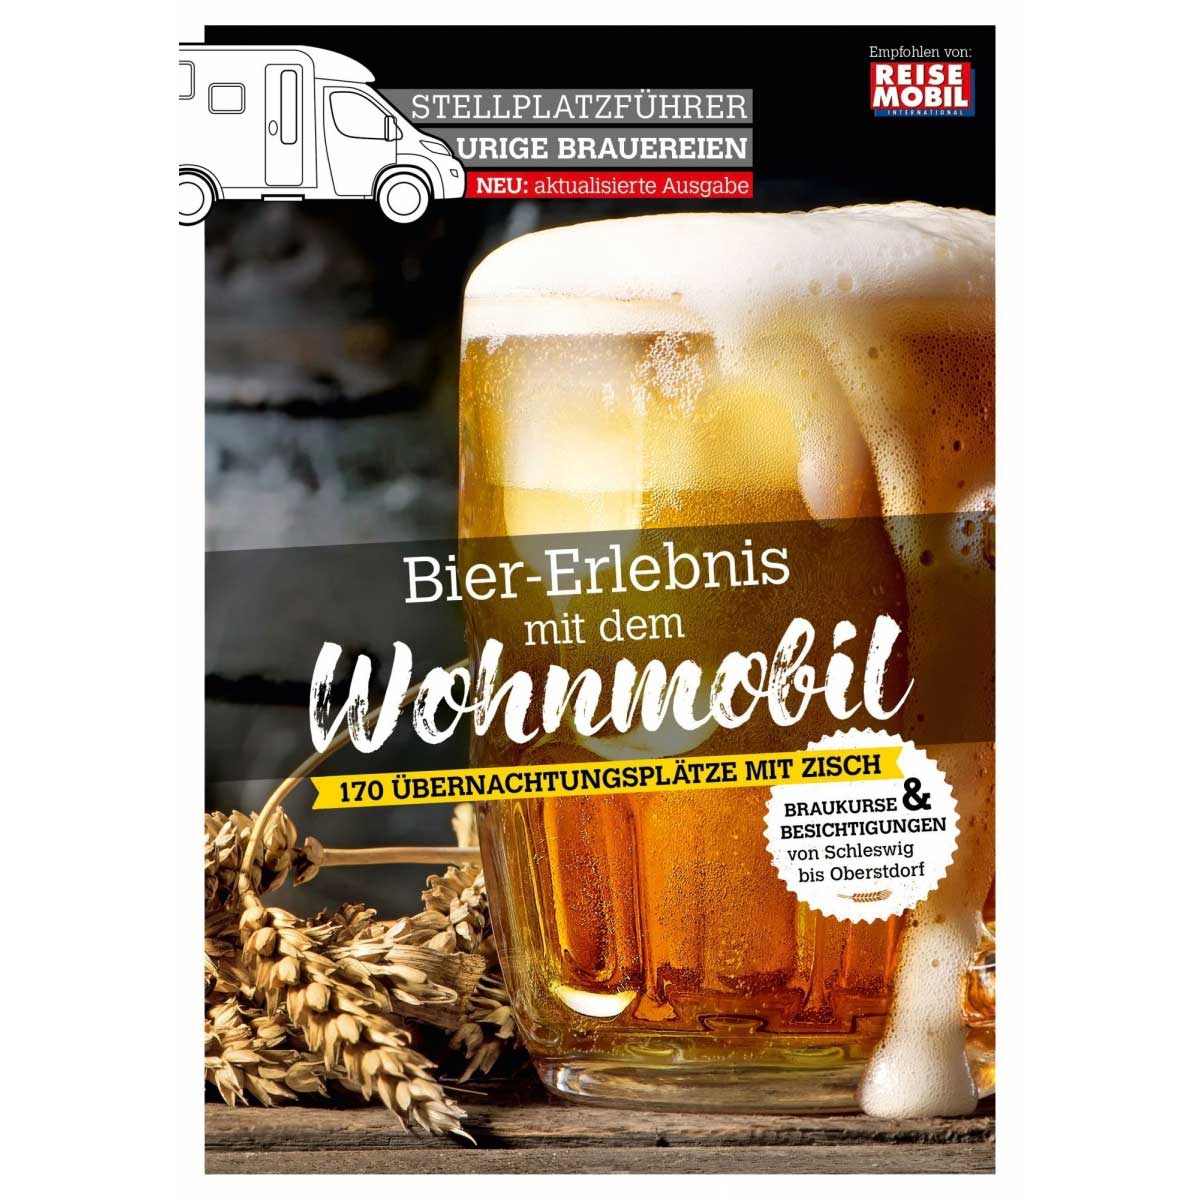 Stellplatzfuehrer Urige Brauerein 2. Auflage